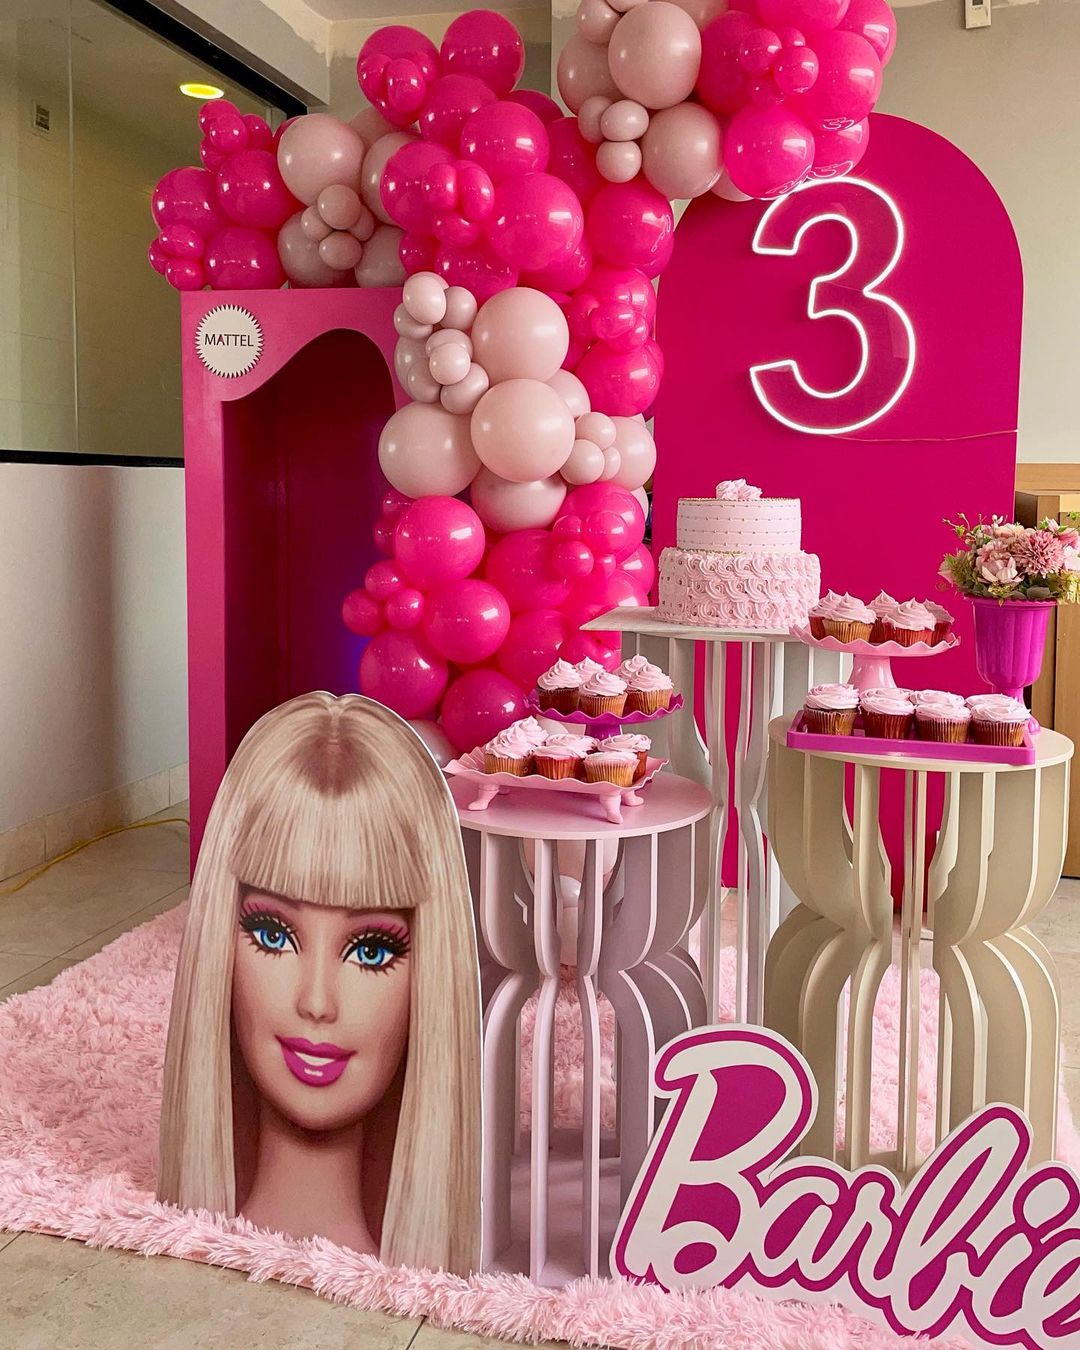 Festa intimista com tema Barbie  Festa barbie, Decoração festa